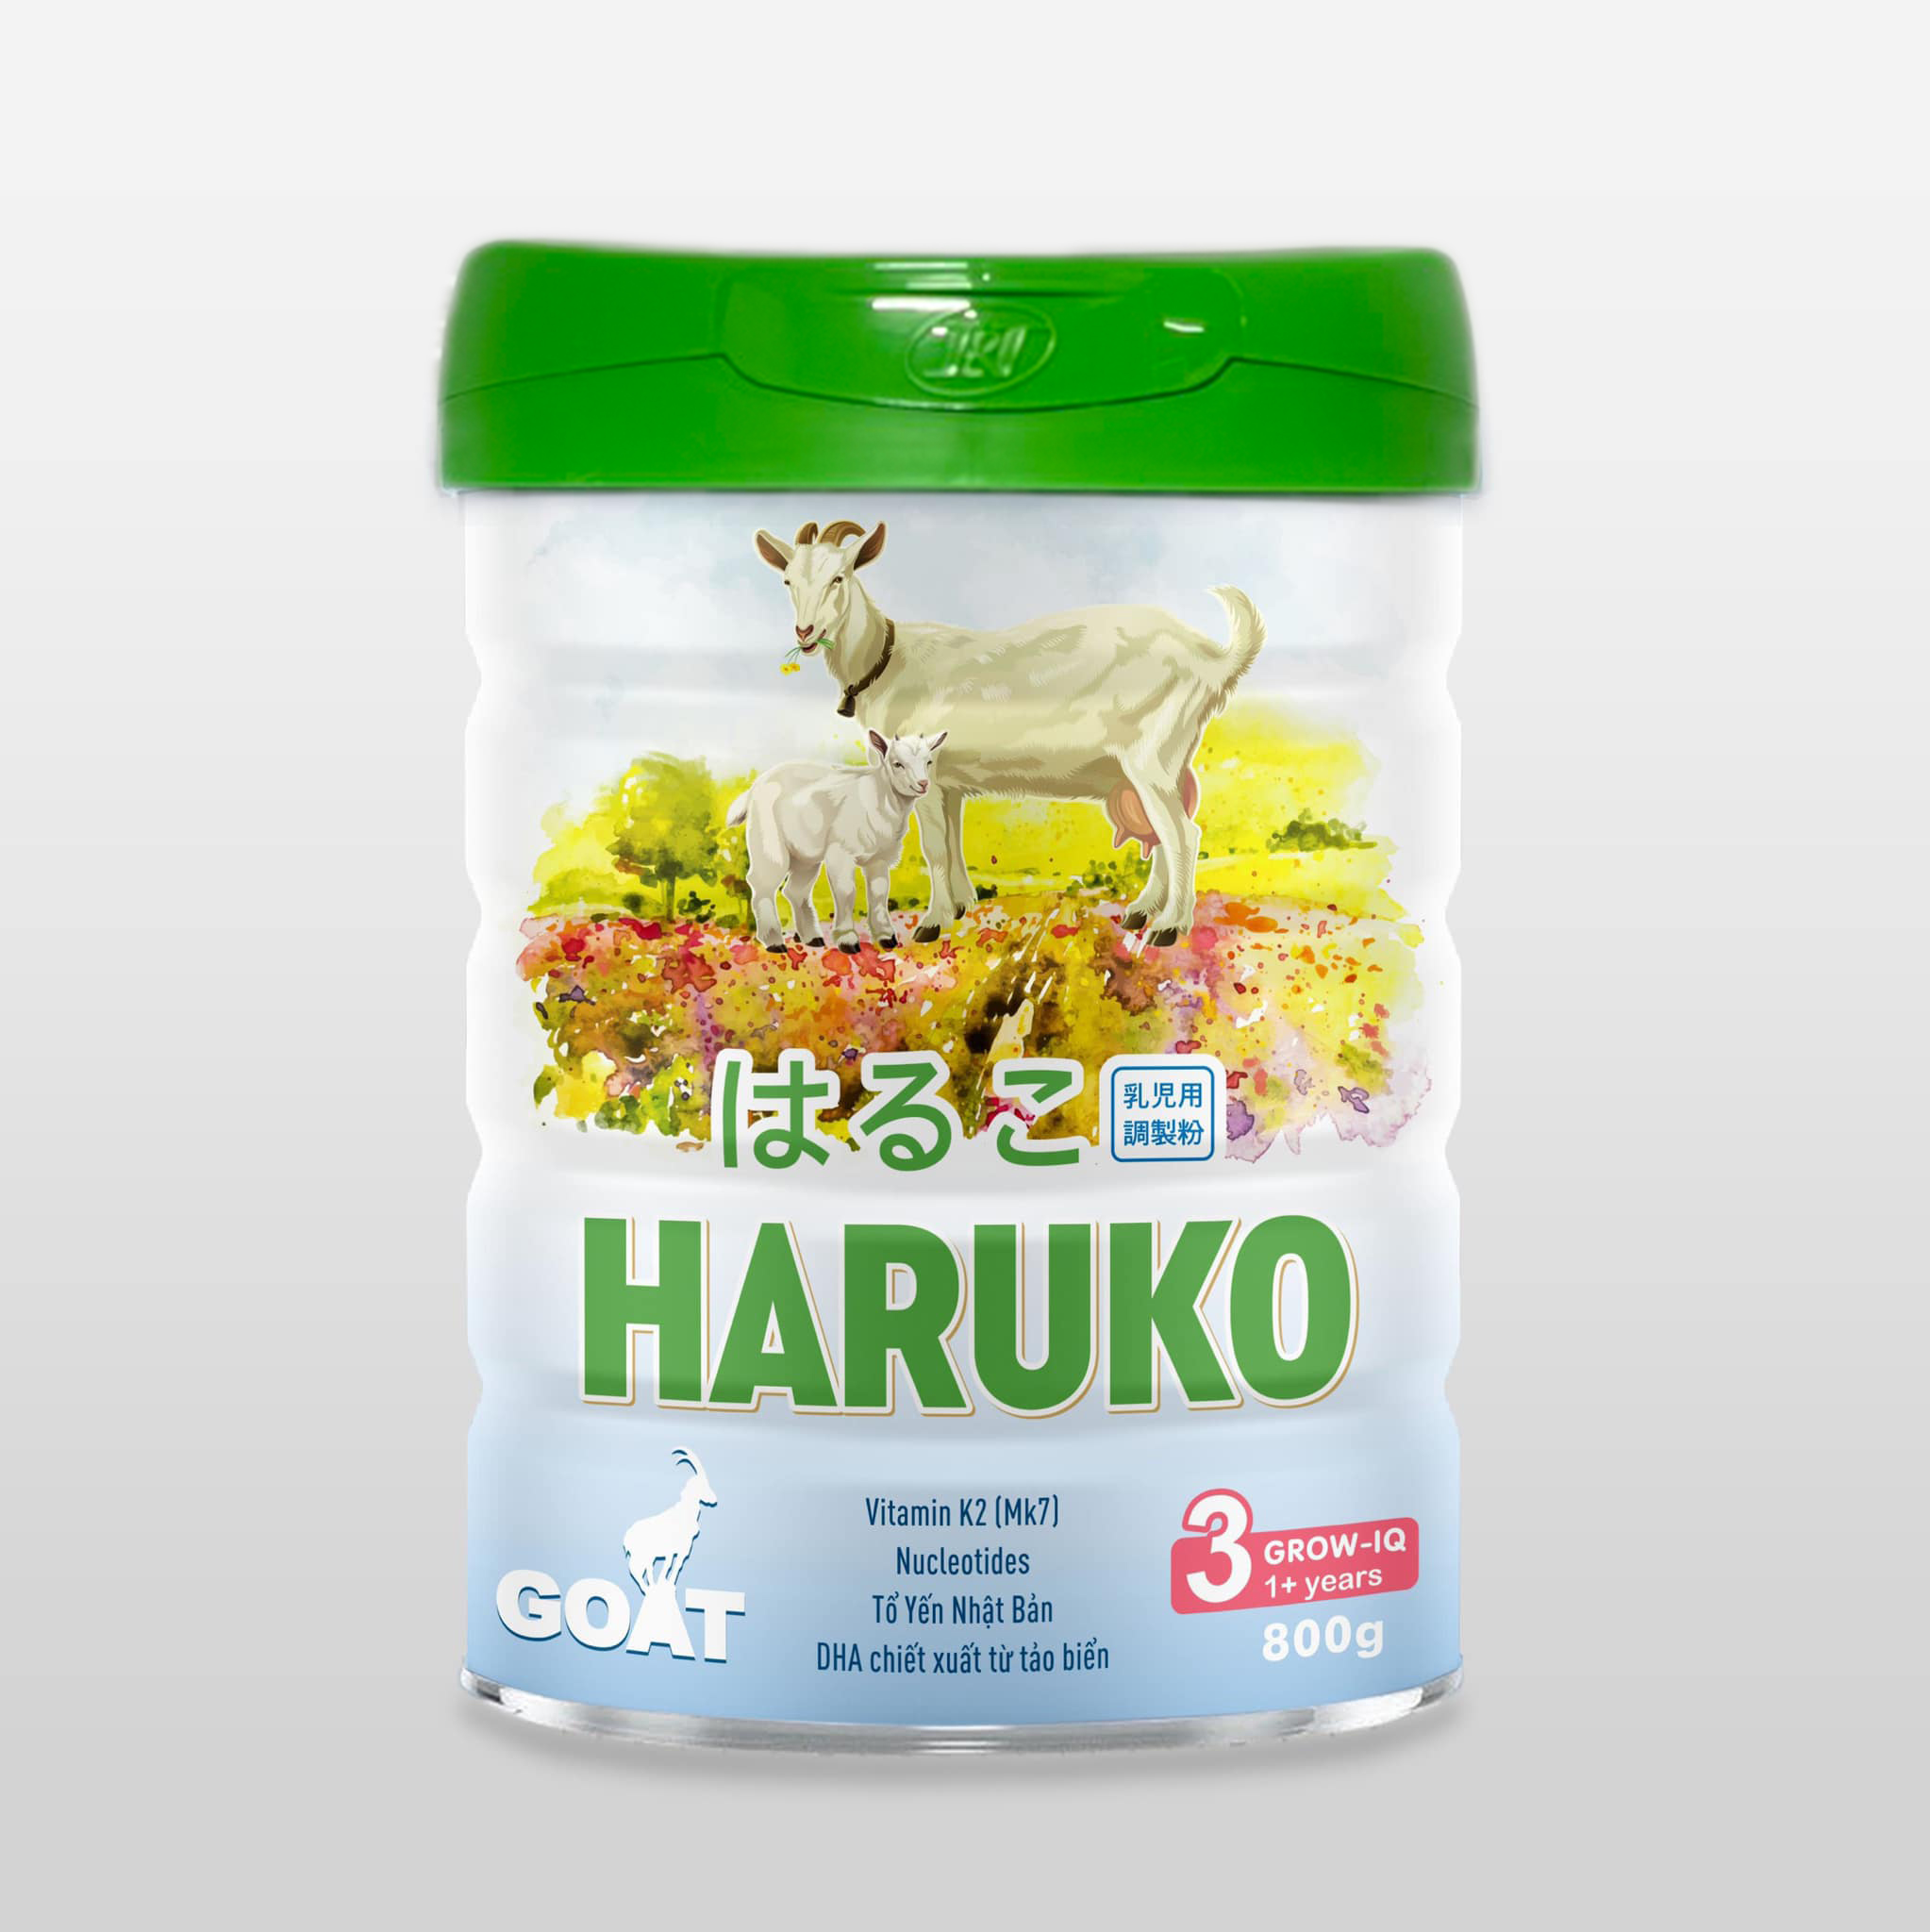 Haruko Goat 3